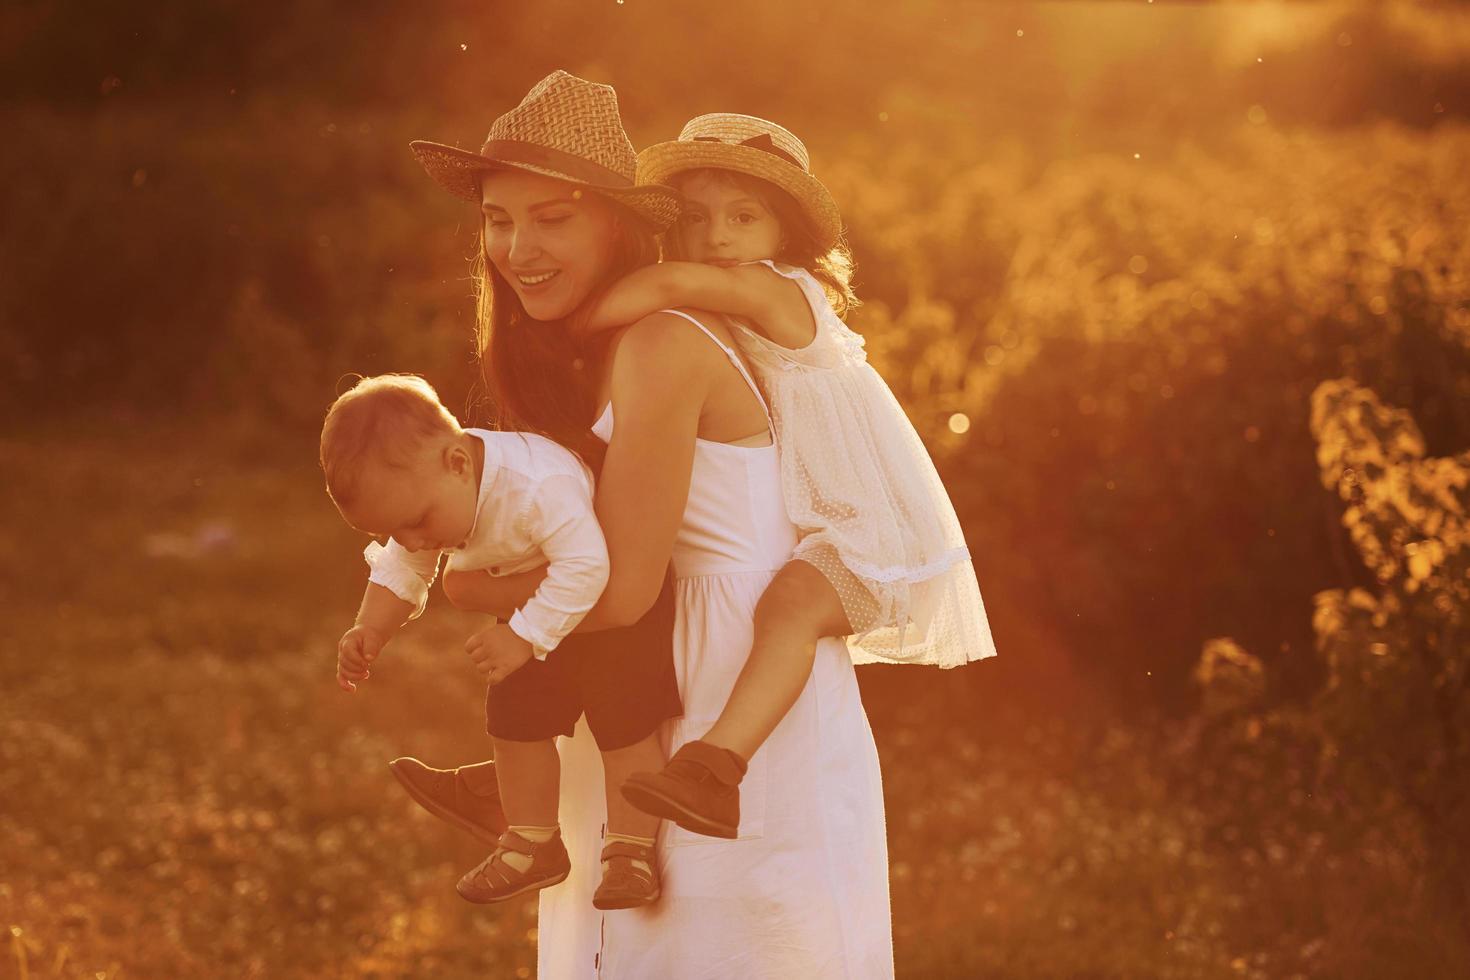 familia feliz de madre, hijo pequeño e hija que pasan tiempo libre en el campo en el día soleado del verano foto